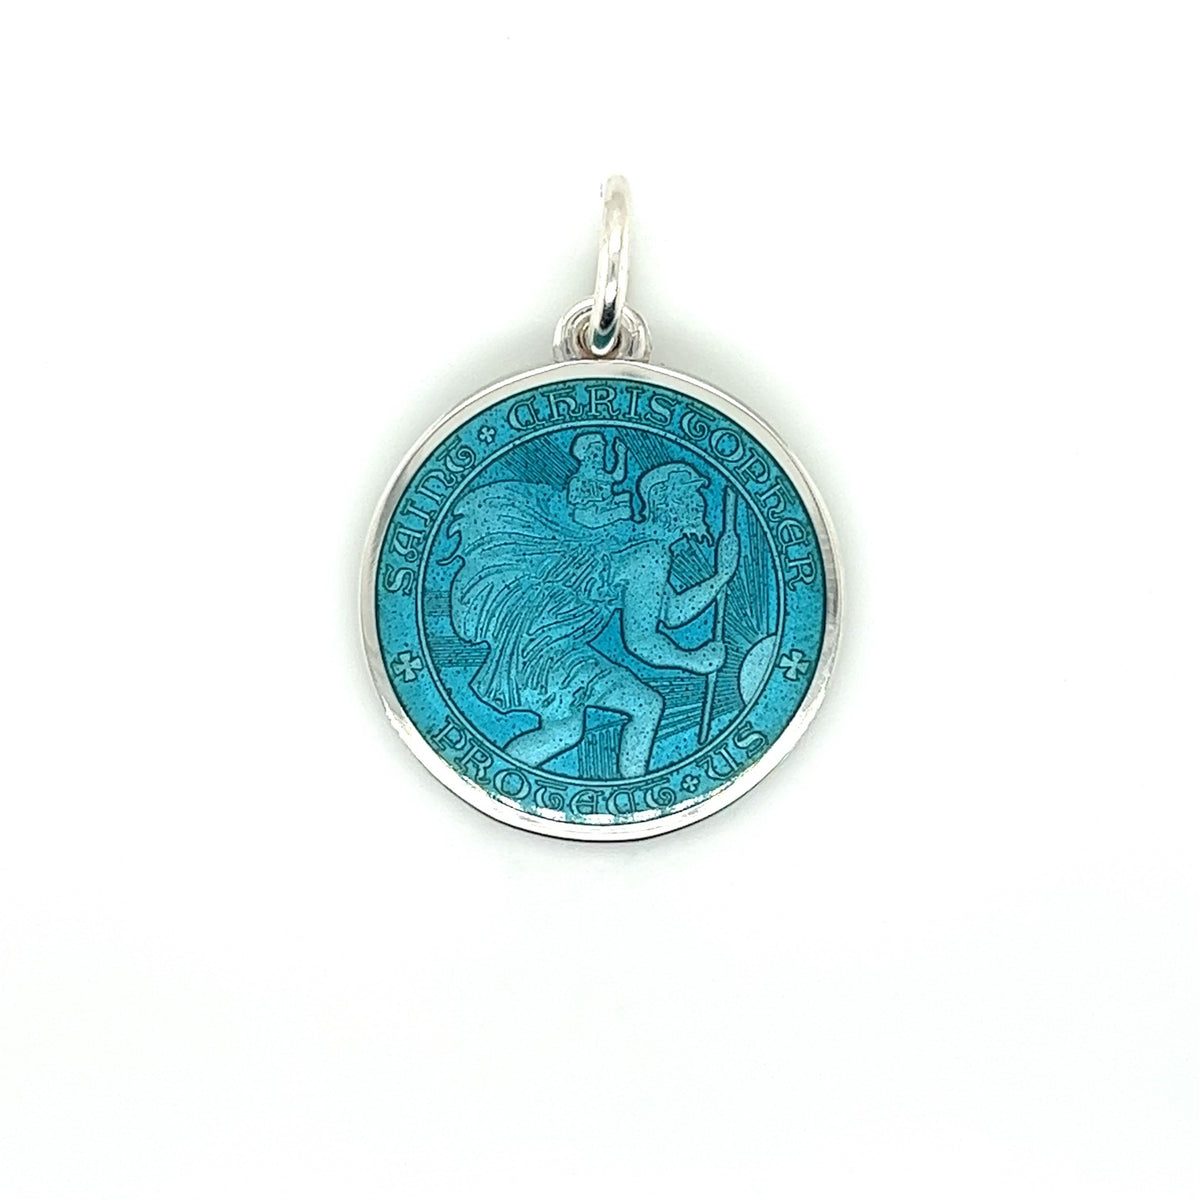 St. Chris Medal